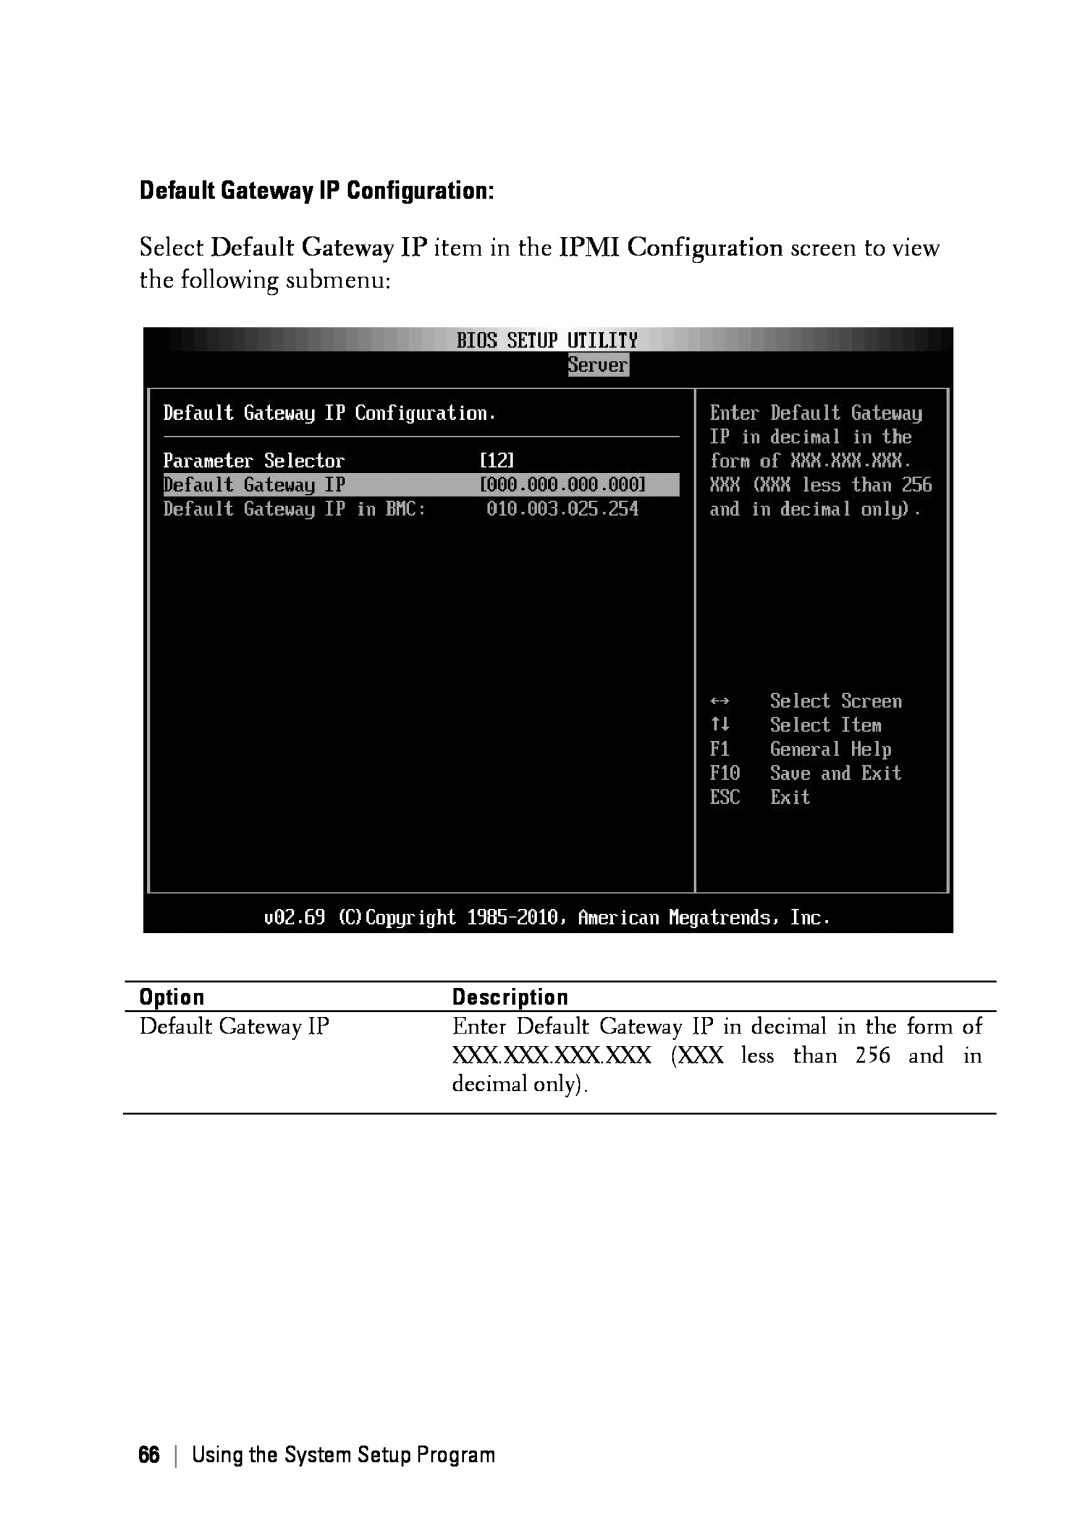 Dell C6145 manual Default Gateway IP Configuration, Option, Description, Using the System Setup Program 